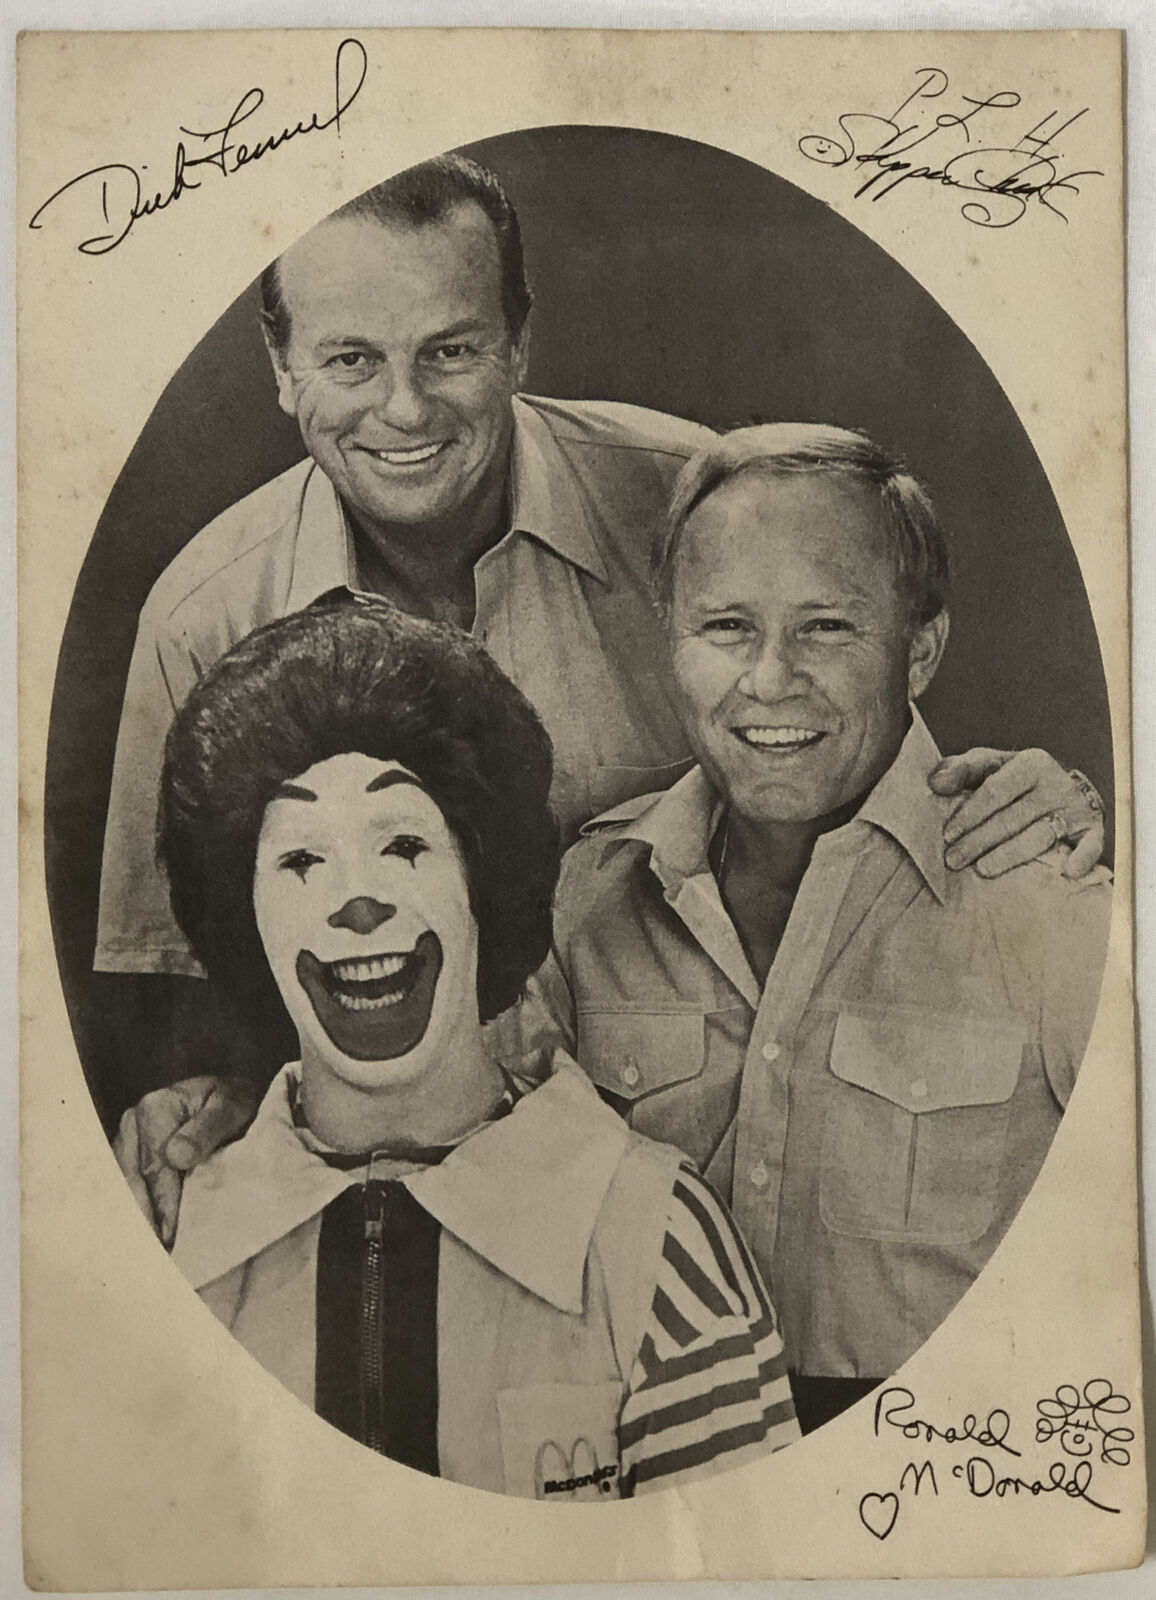 Vintage Ronald McDonald Autographed promotional photograph